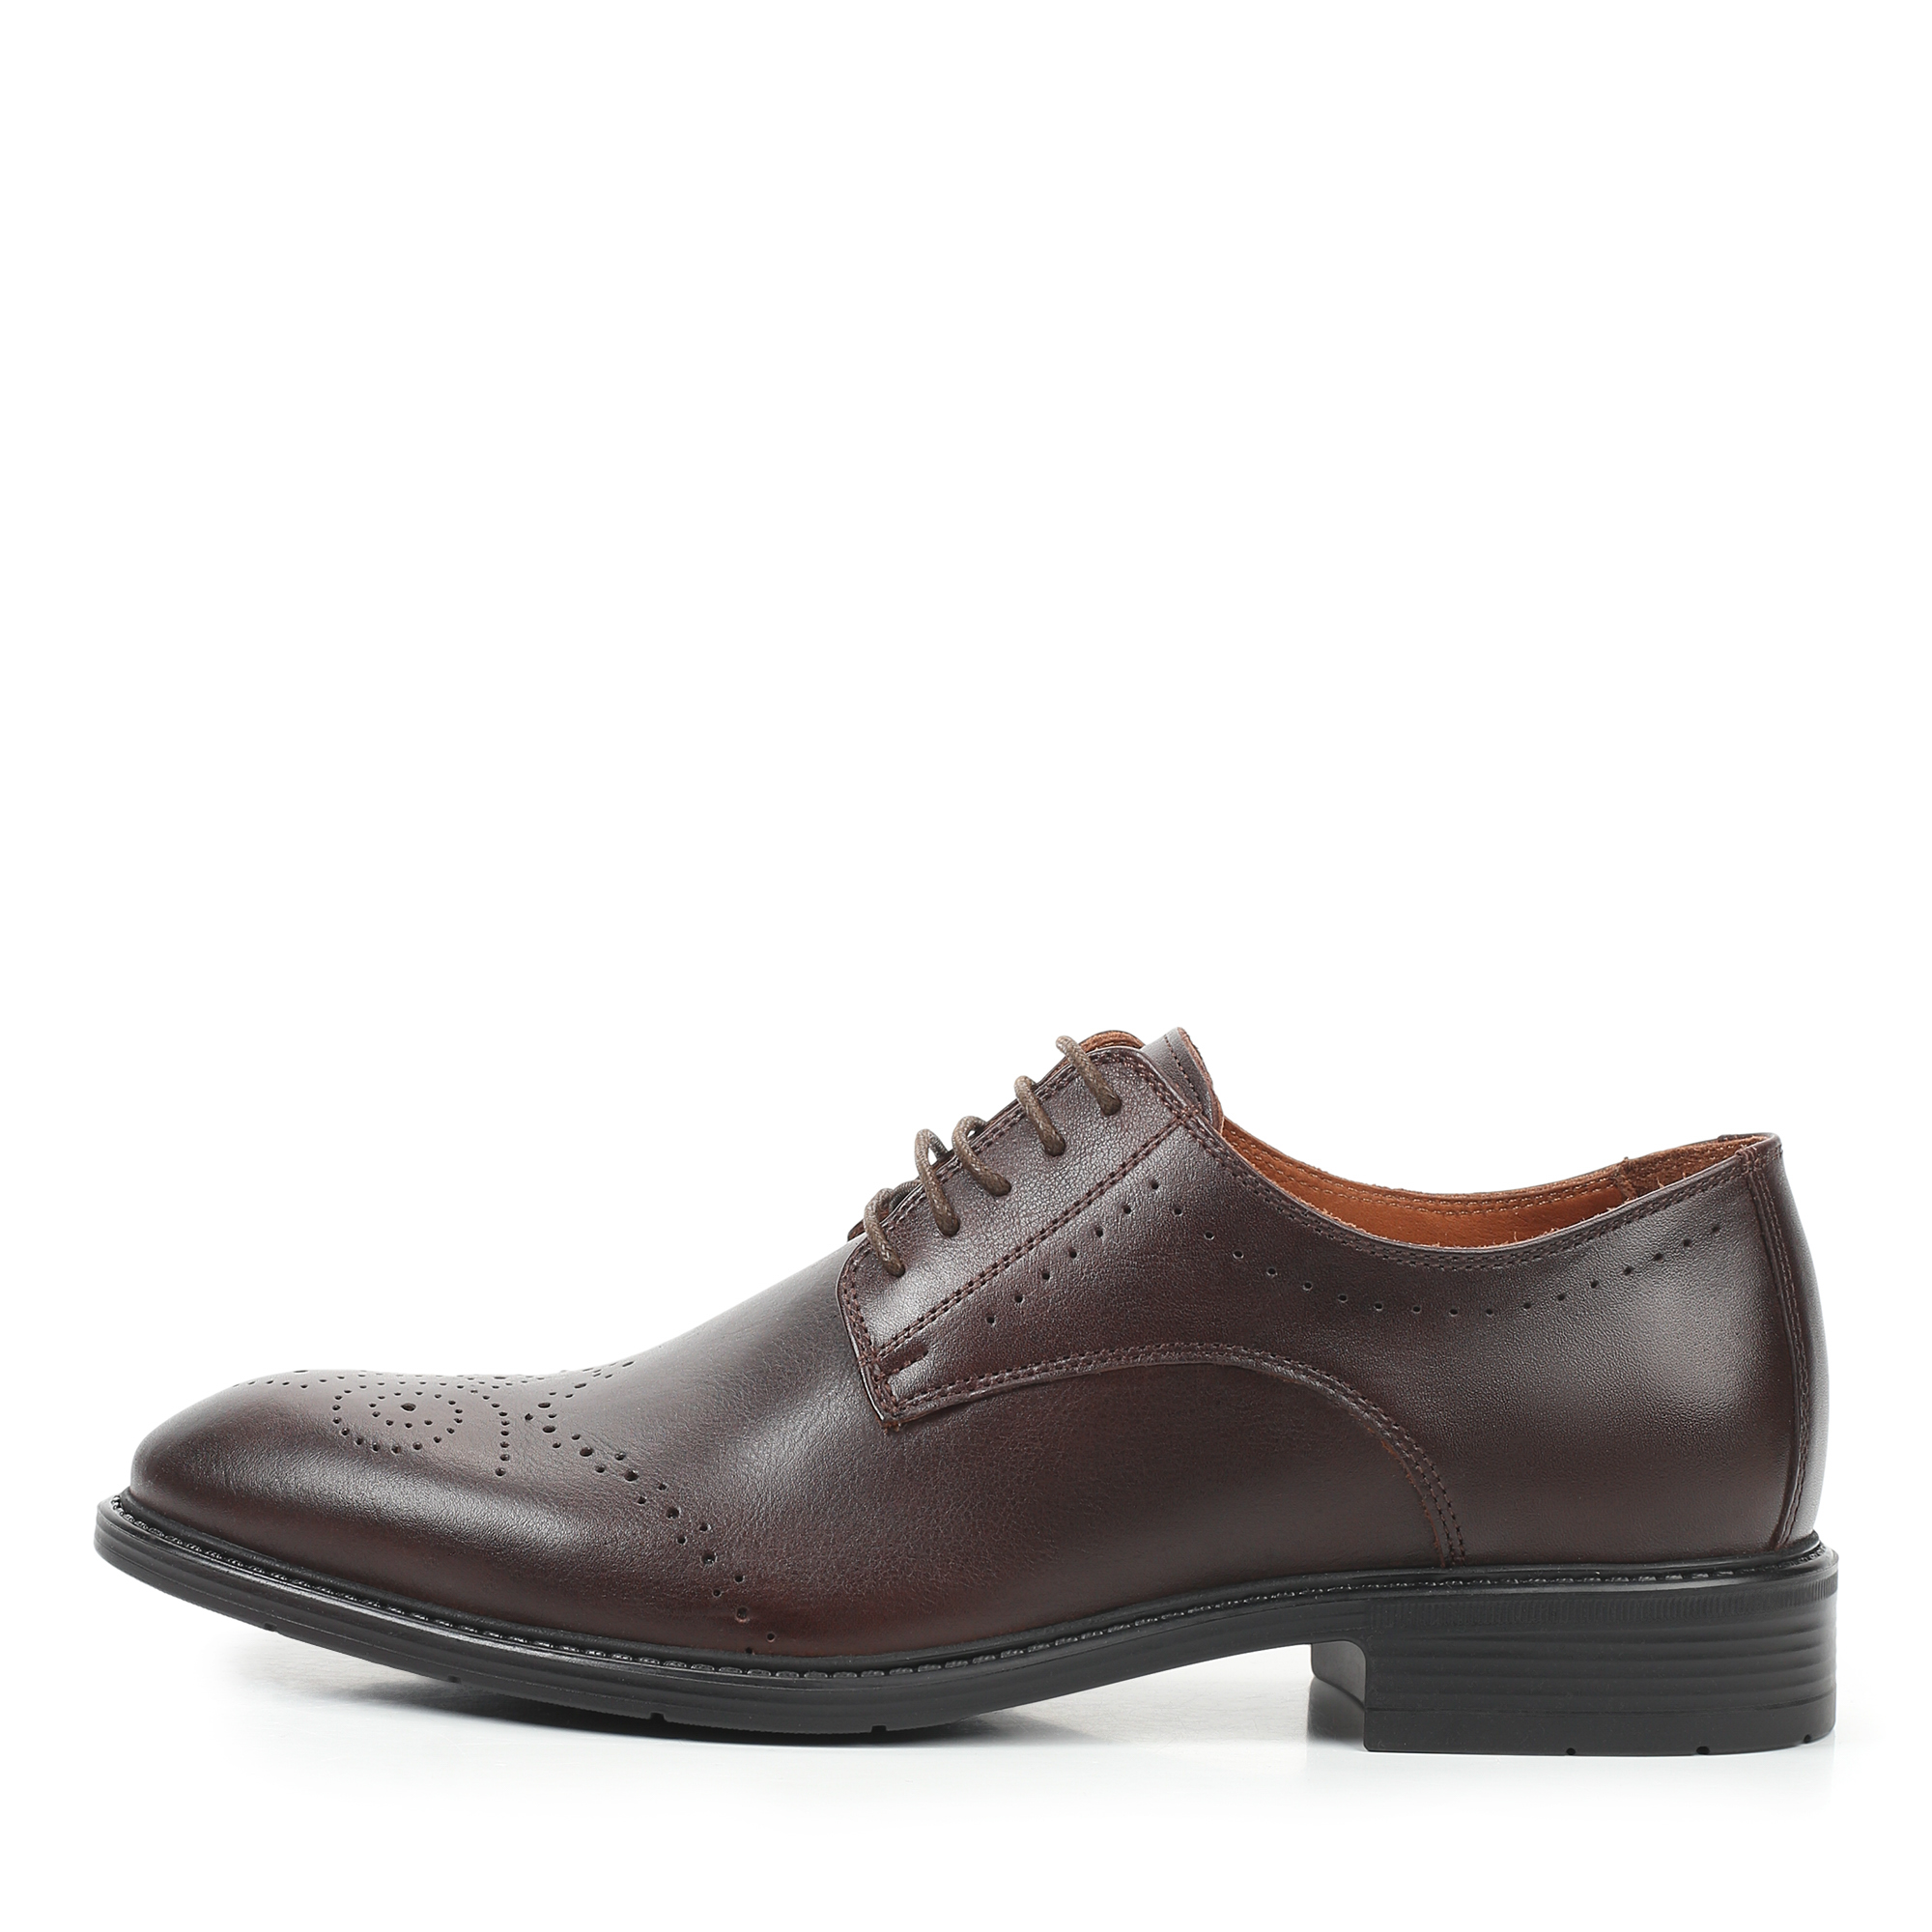 Туфли/полуботинки Thomas Munz 331-071A-1109, цвет темно-коричневый, размер 40